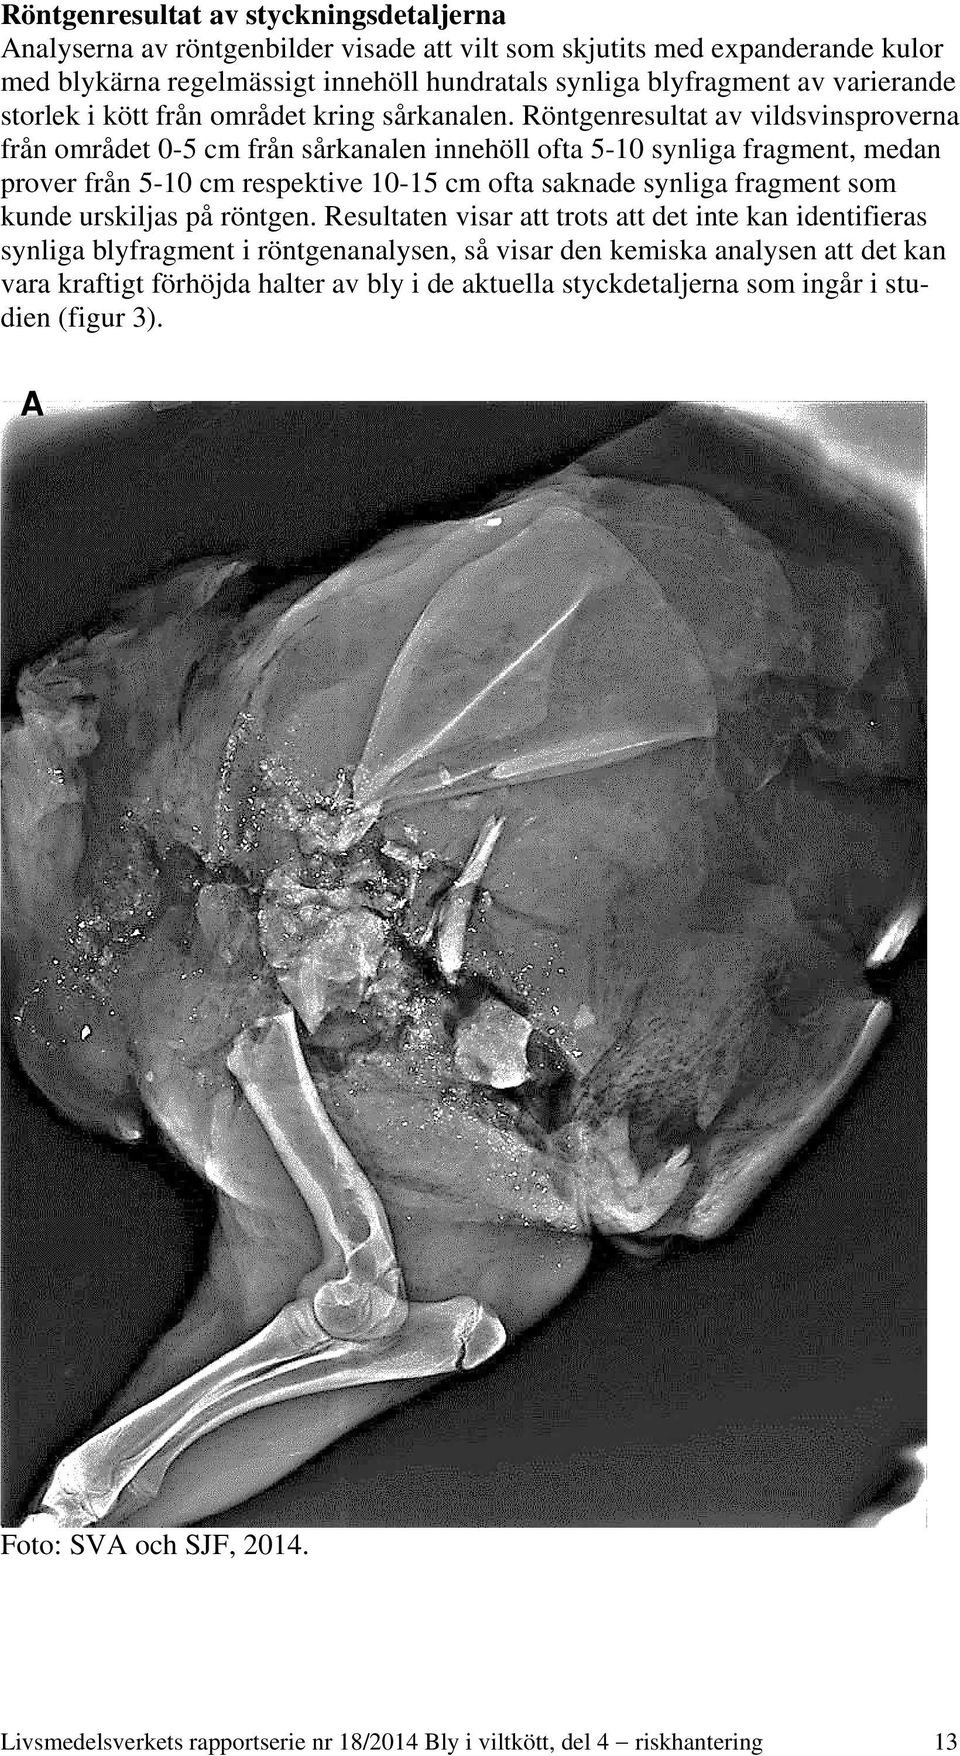 Röntgenresultat av vildsvinsproverna från området 0-5 cm från sårkanalen innehöll ofta 5-10 synliga fragment, medan prover från 5-10 cm respektive 10-15 cm ofta saknade synliga fragment som kunde